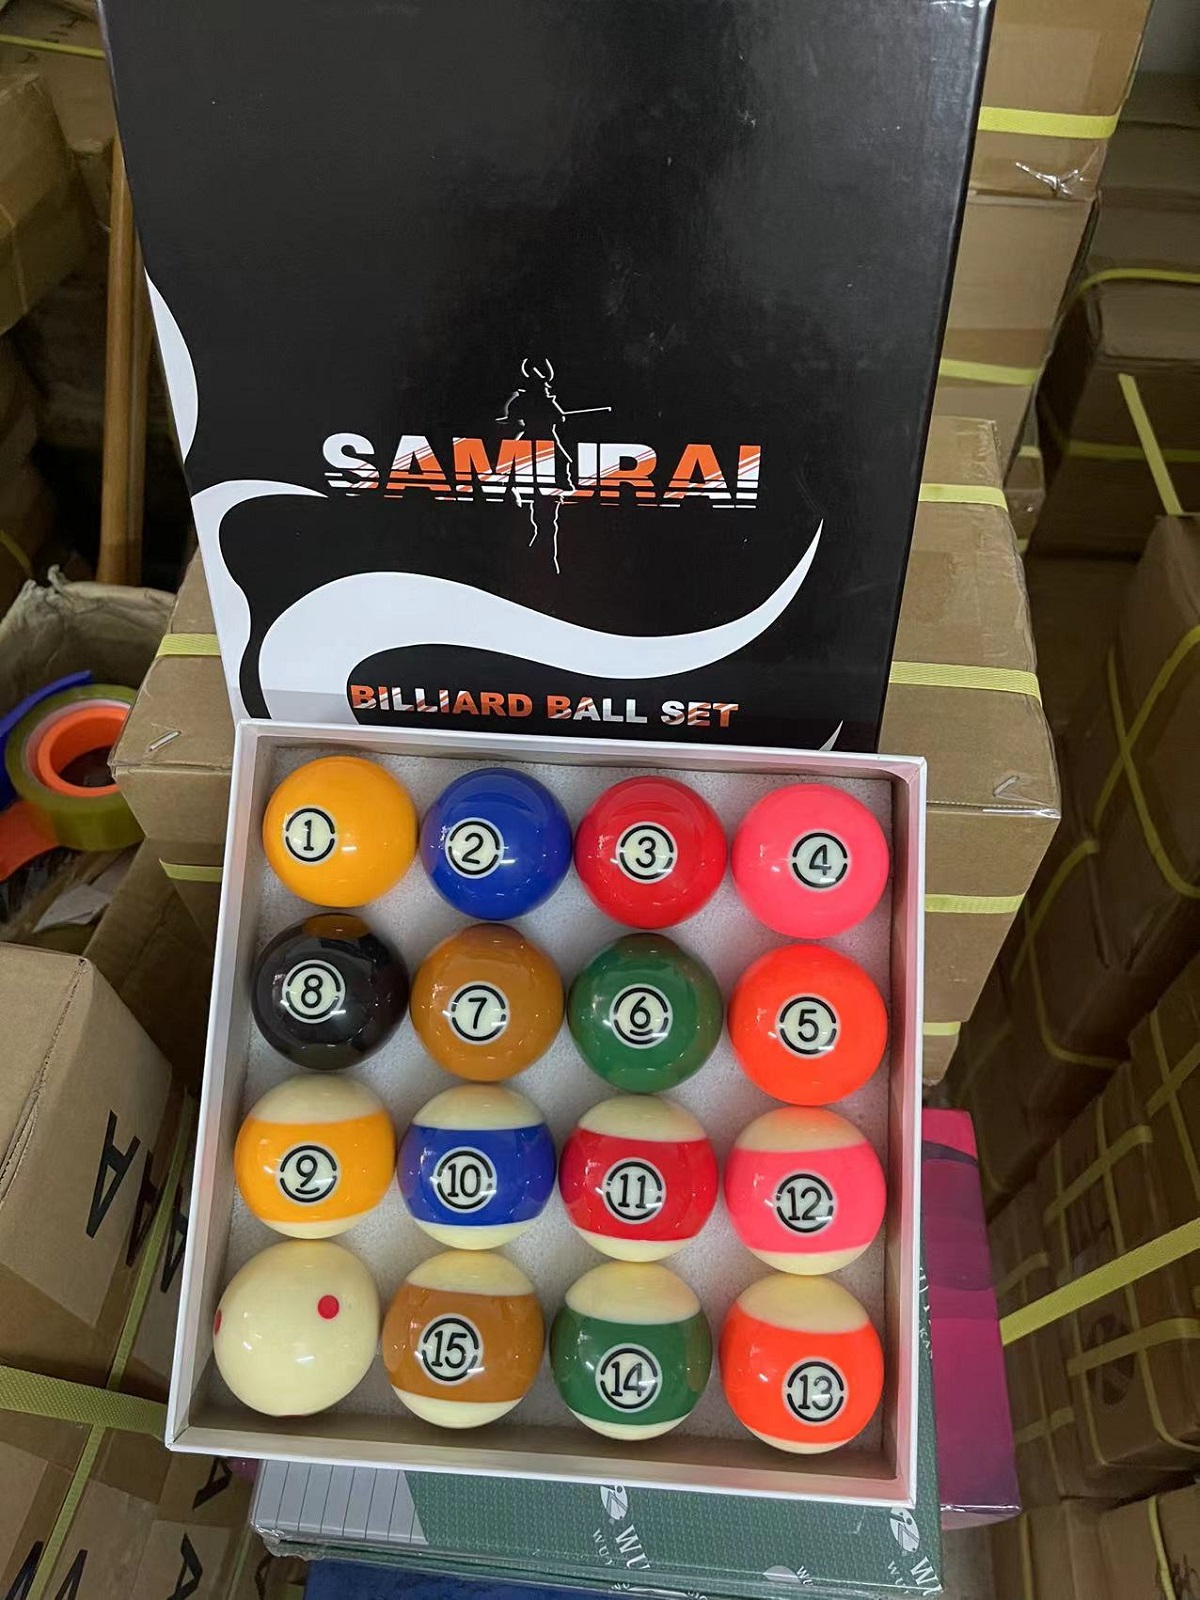 Bộ 16 bóng bi a bida lỗ samurai kích thước chuẩn thi đấu 57,2mm - Sản phẩm đúng như hình ảnh cung cấp